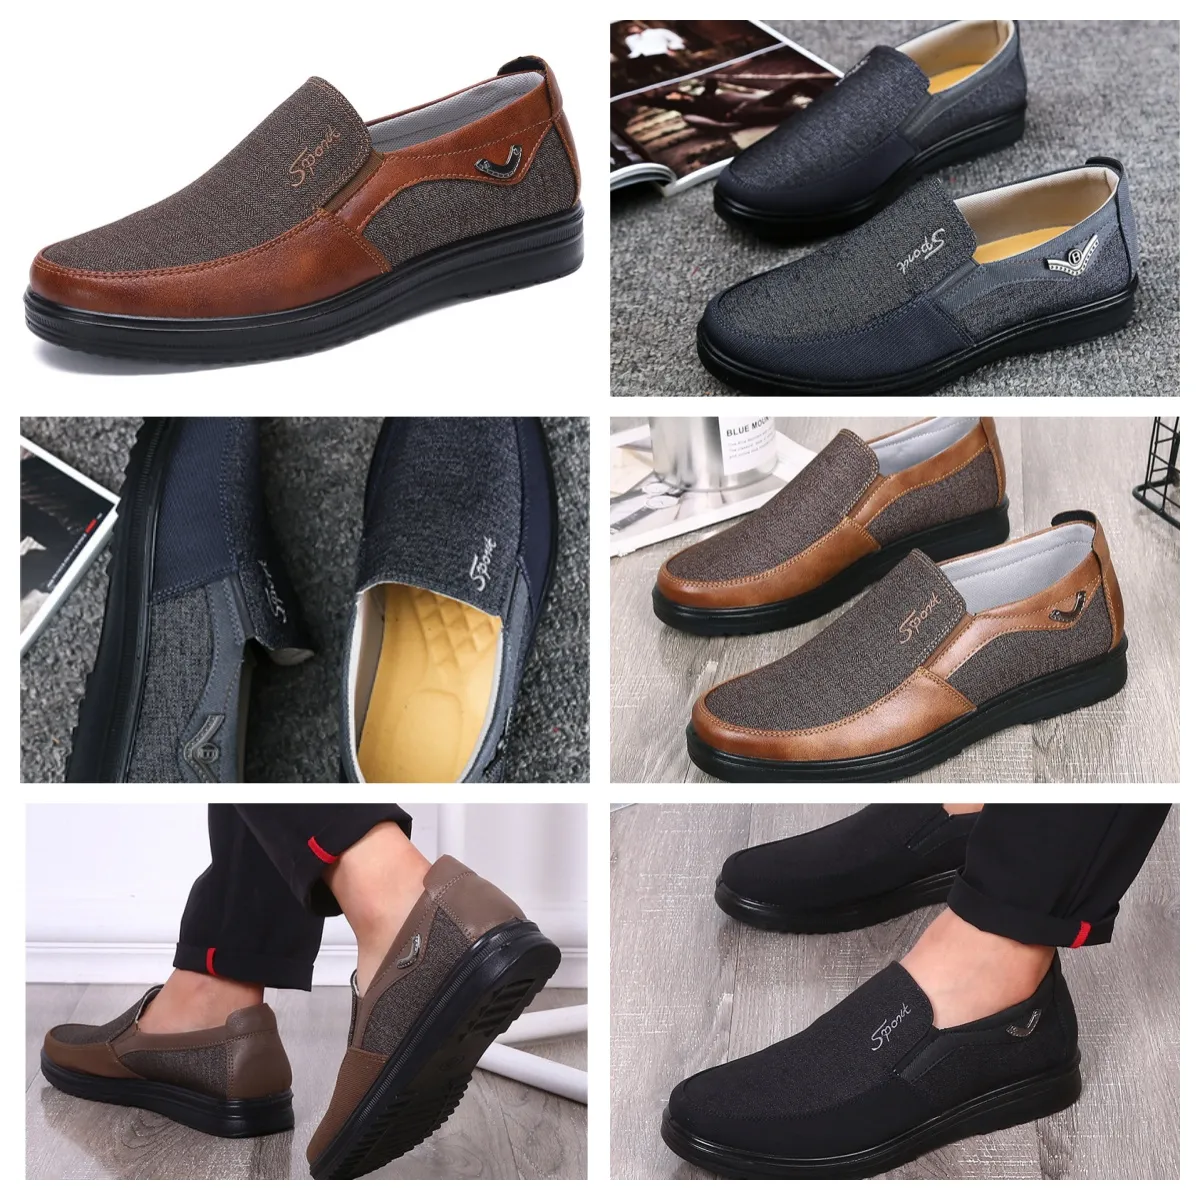 Chaussures GAI sneaker sport chaussures en tissu hommes célibataires affaires chaussures basses décontracté semelle souple pantoufles plat hommes chaussure noir confort softs grandes tailles 38-50